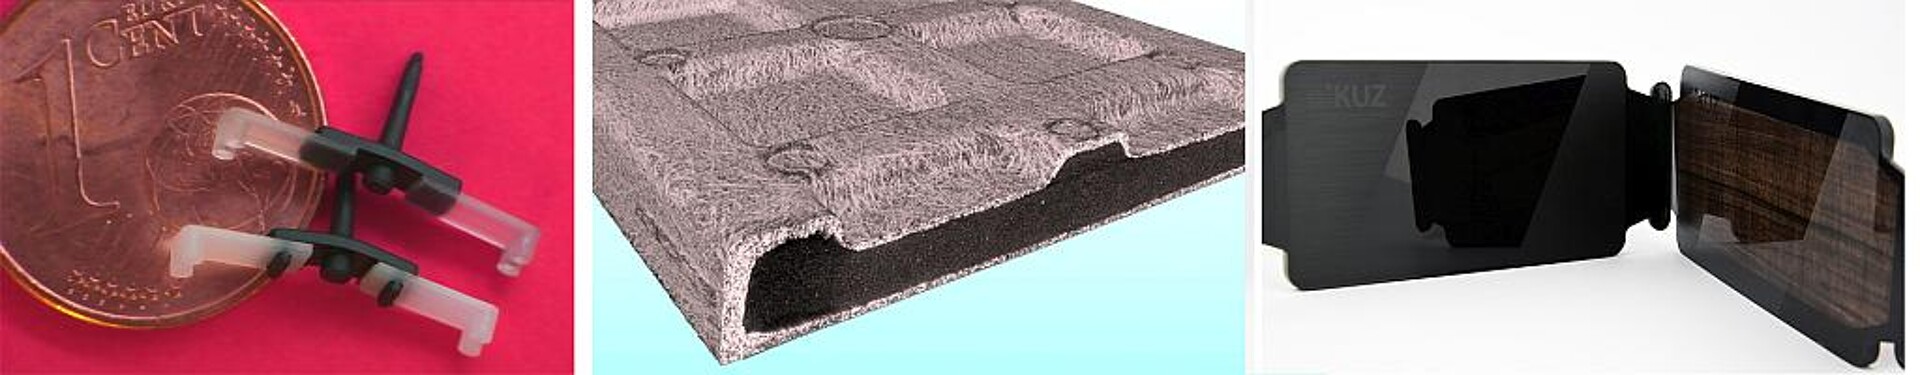 Die Messe-Schwerpunkte des KUZ (v.l.n.r.): 2K-Mikroformteile Thermoplast/Silikon, ultraleichter Thermoplast-Schaumspritzguss, veredelte Oberflächen. (Foto: KUZ)